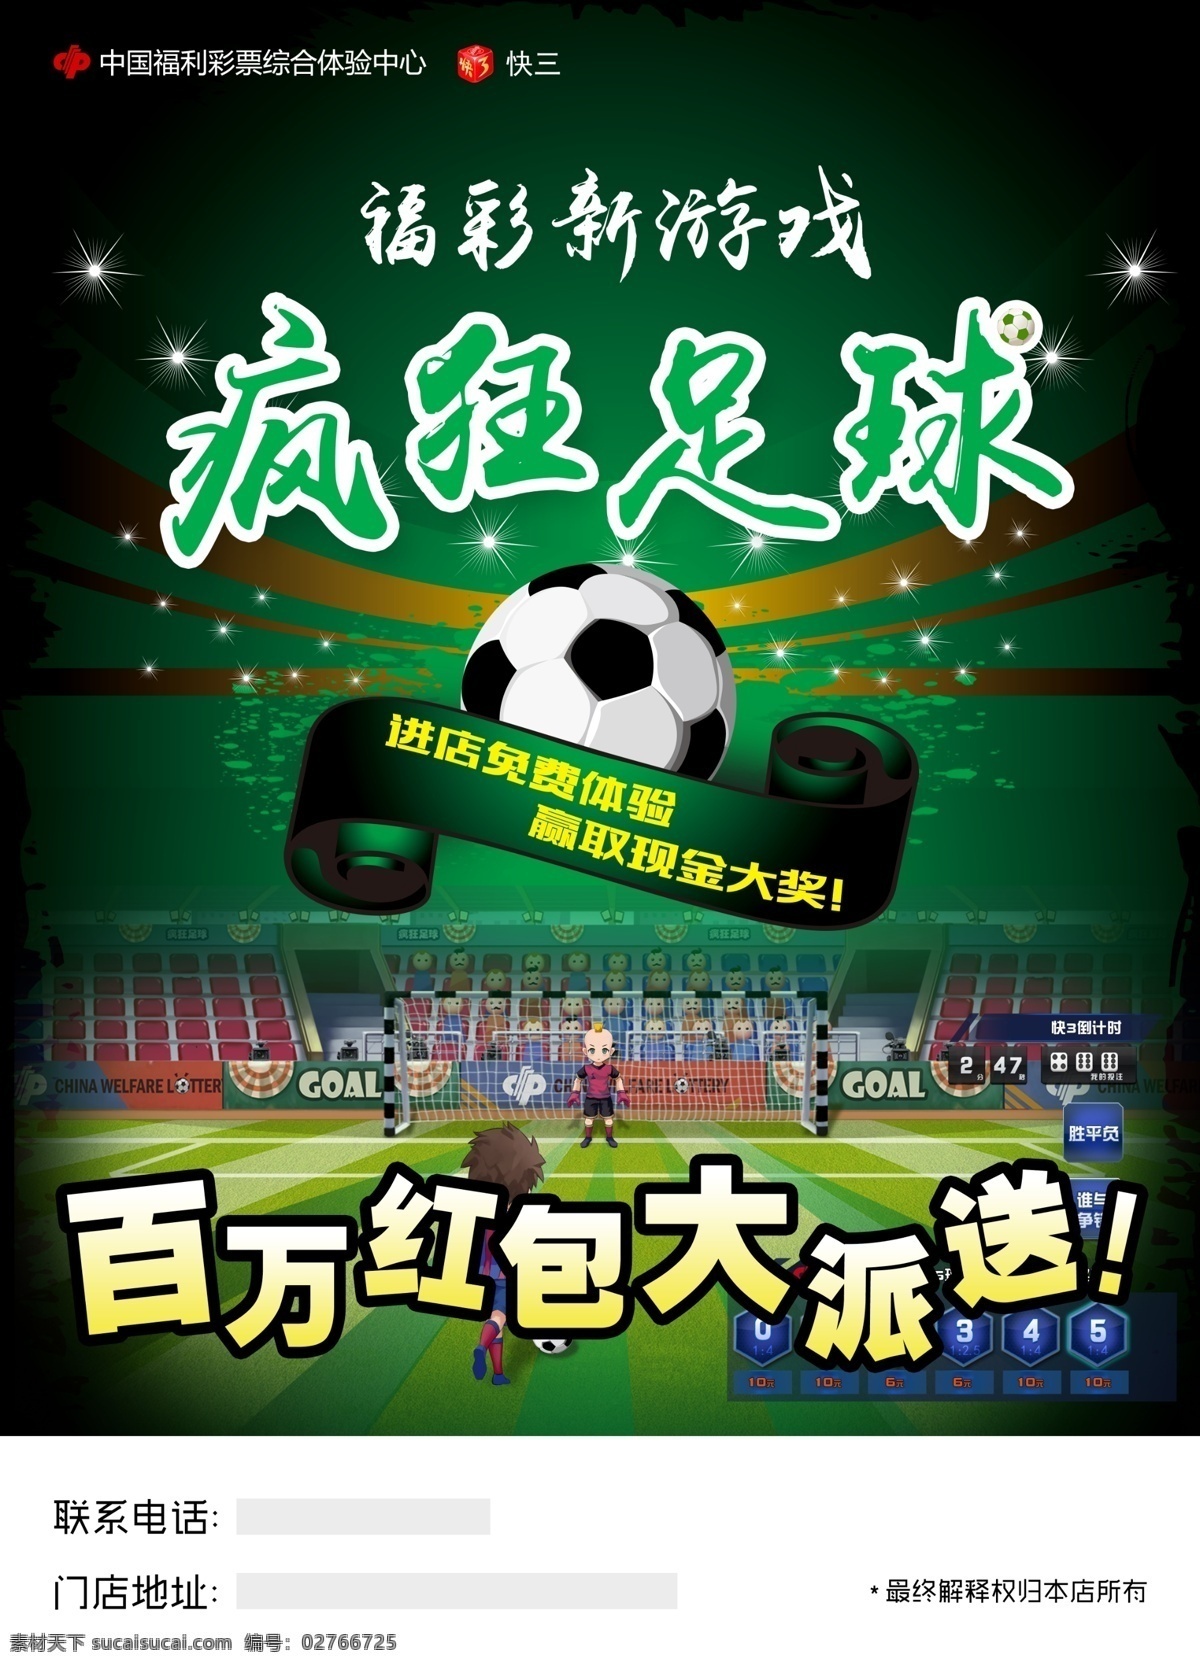 福彩 足球 游戏 海报 福彩游戏 疯狂足球 宣传页 福彩海报 快三游戏 黑色